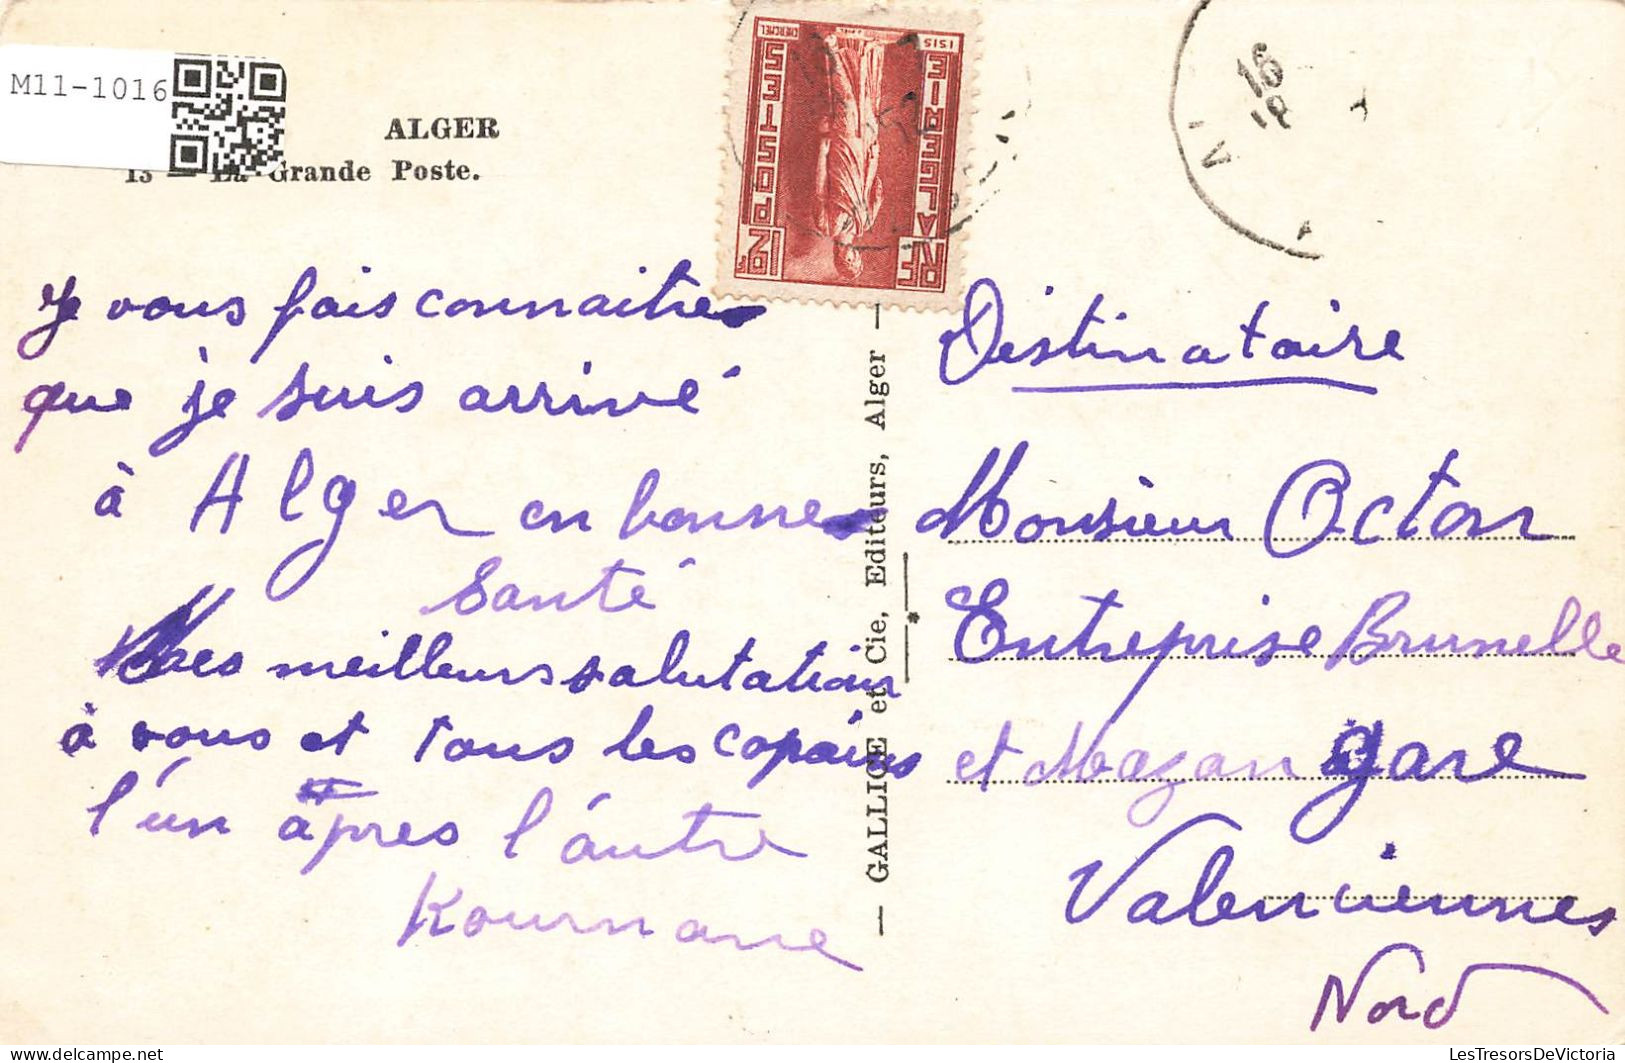 ALGERIE - Alger - Grande Poste - Colorisé - Carte Postale Ancienne - Algiers